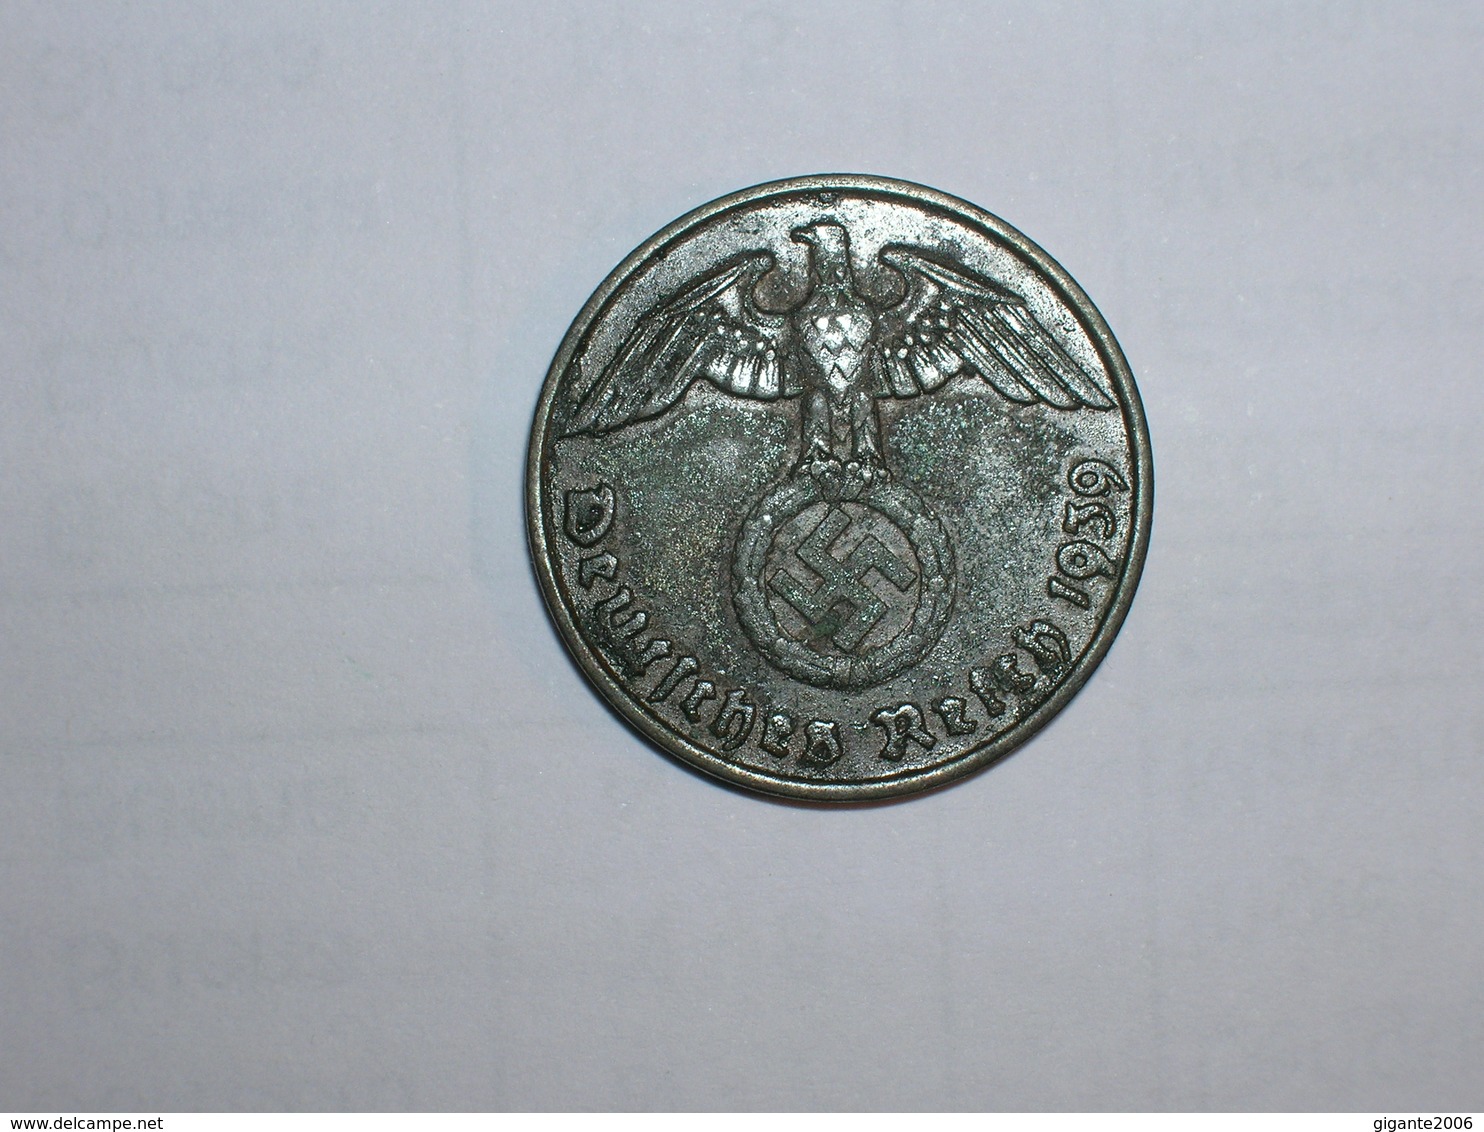 ALEMANIA- 2 PFENNIG 1939 J (953) - 2 Reichspfennig